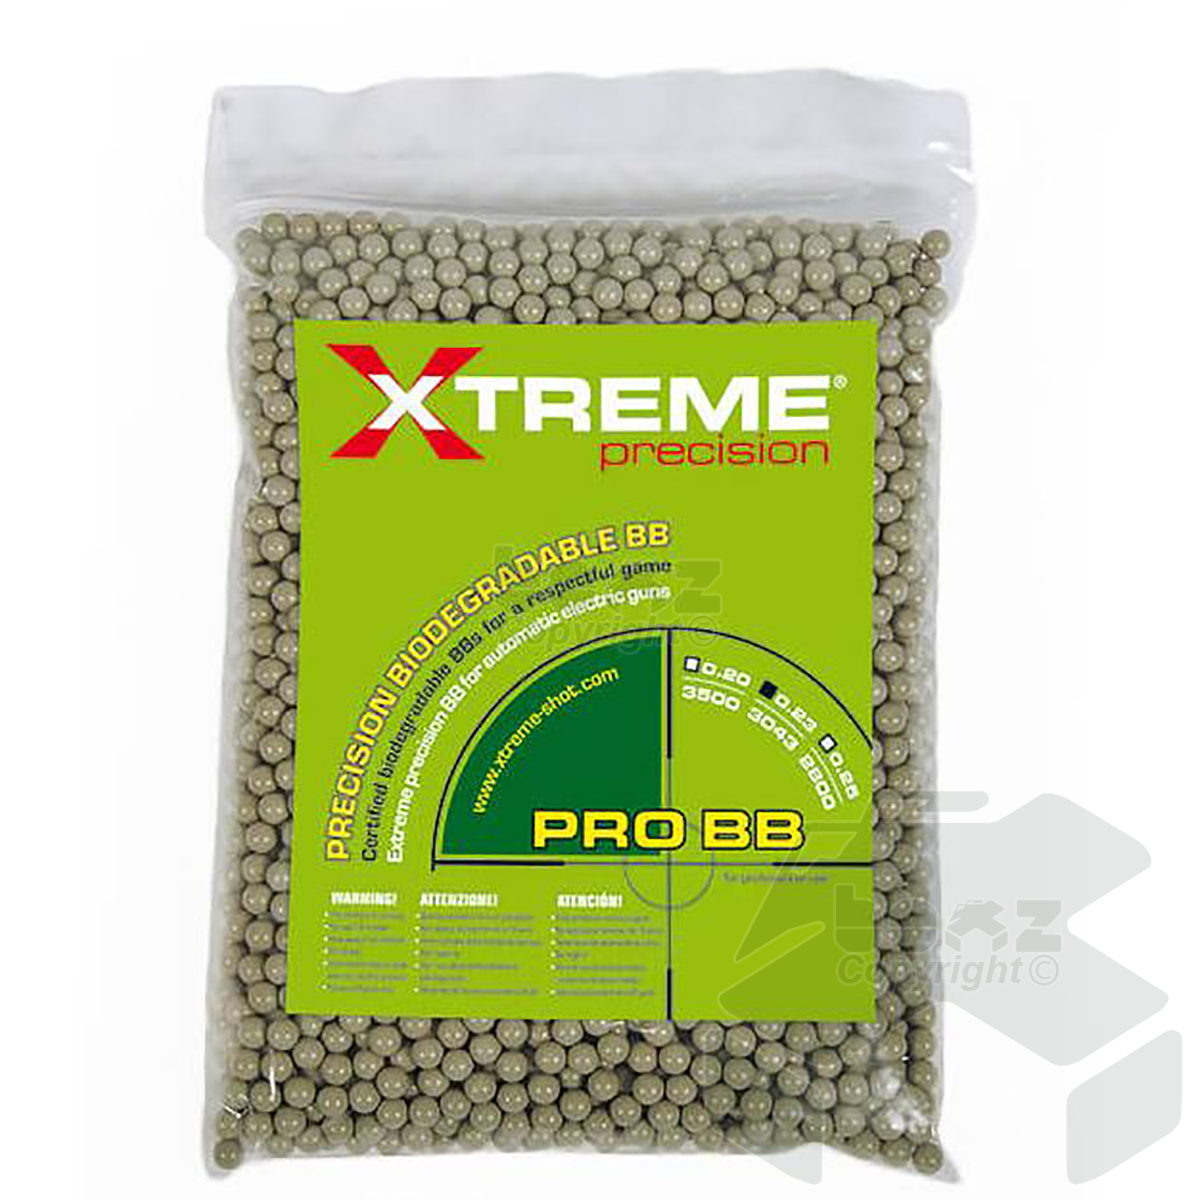 Xtreme Precision 0.23g Bio BBs Dark Earth 700g bag